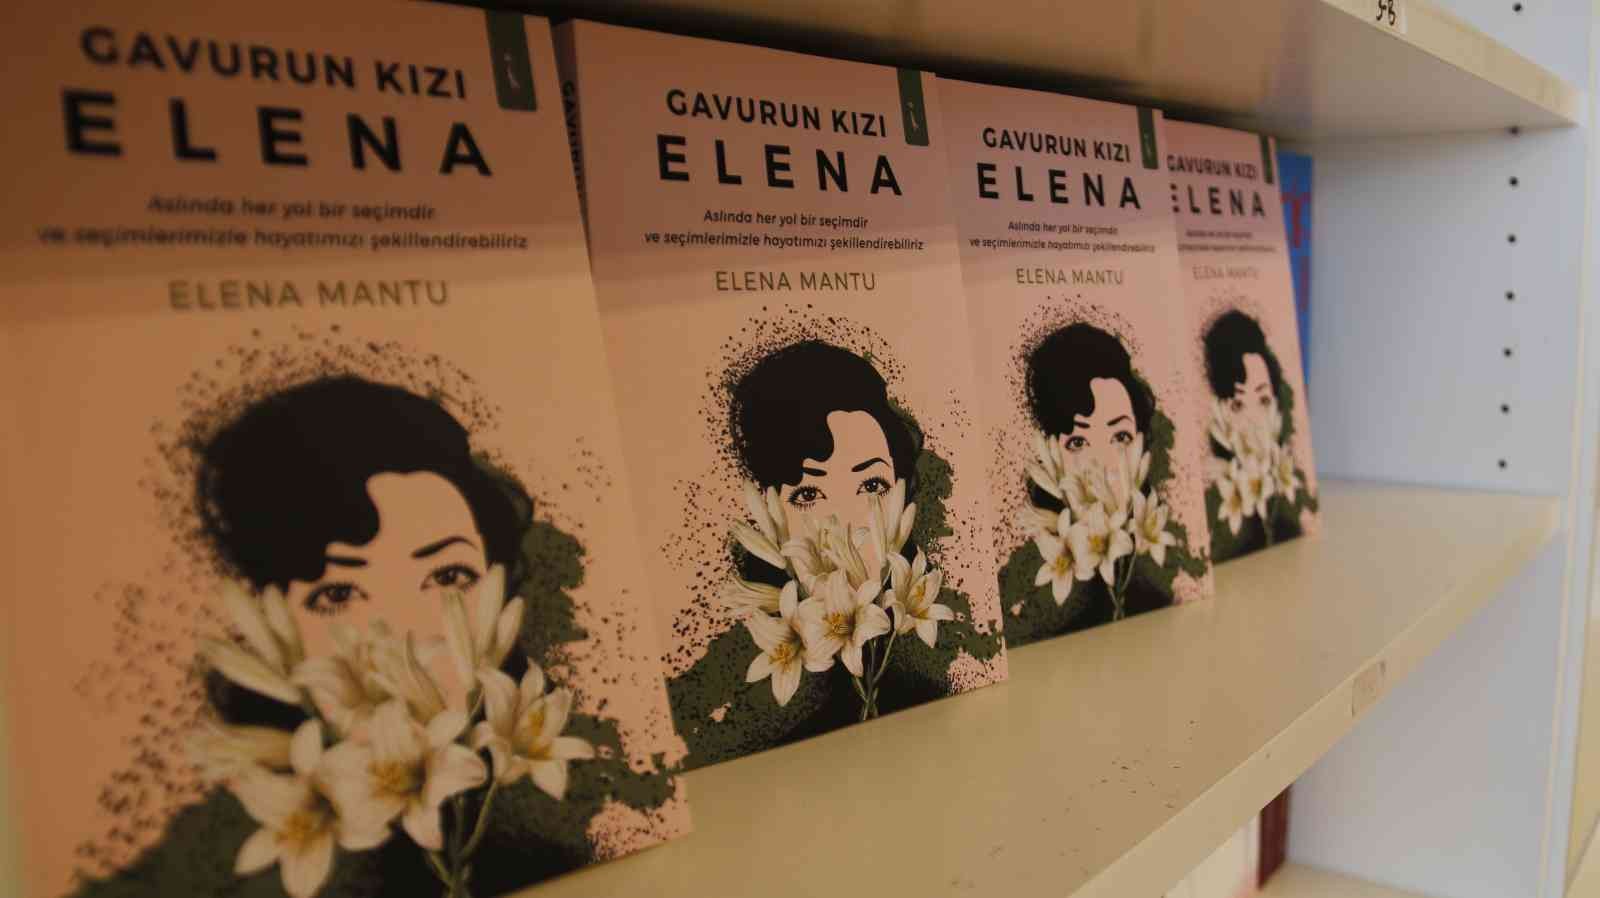 8 Mart Dünya Kadınlar Günü’nde Elena Mantu kaleme aldığı “Gavurun Kızı Elena” isimli kitabında ev hanımlığından yazarlığa uzanan yolculuğunu ...